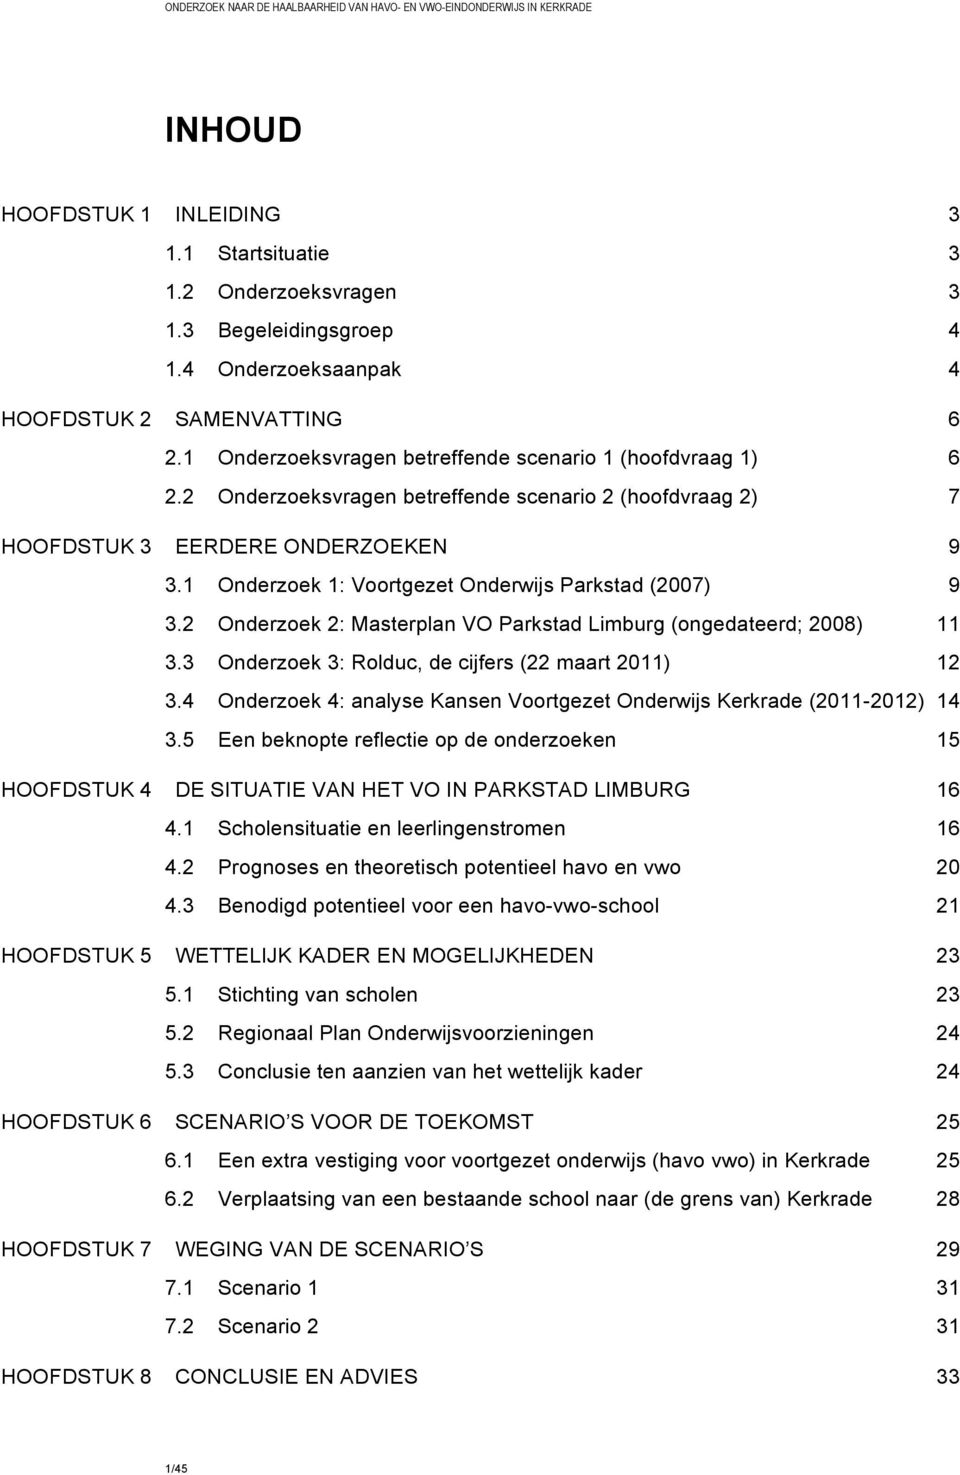 1 Onderzoek 1: Voortgezet Onderwijs Parkstad (2007) 9 3.2 Onderzoek 2: Masterplan VO Parkstad Limburg (ongedateerd; 2008) 11 3.3 Onderzoek 3: Rolduc, de cijfers (22 maart 2011) 12 3.